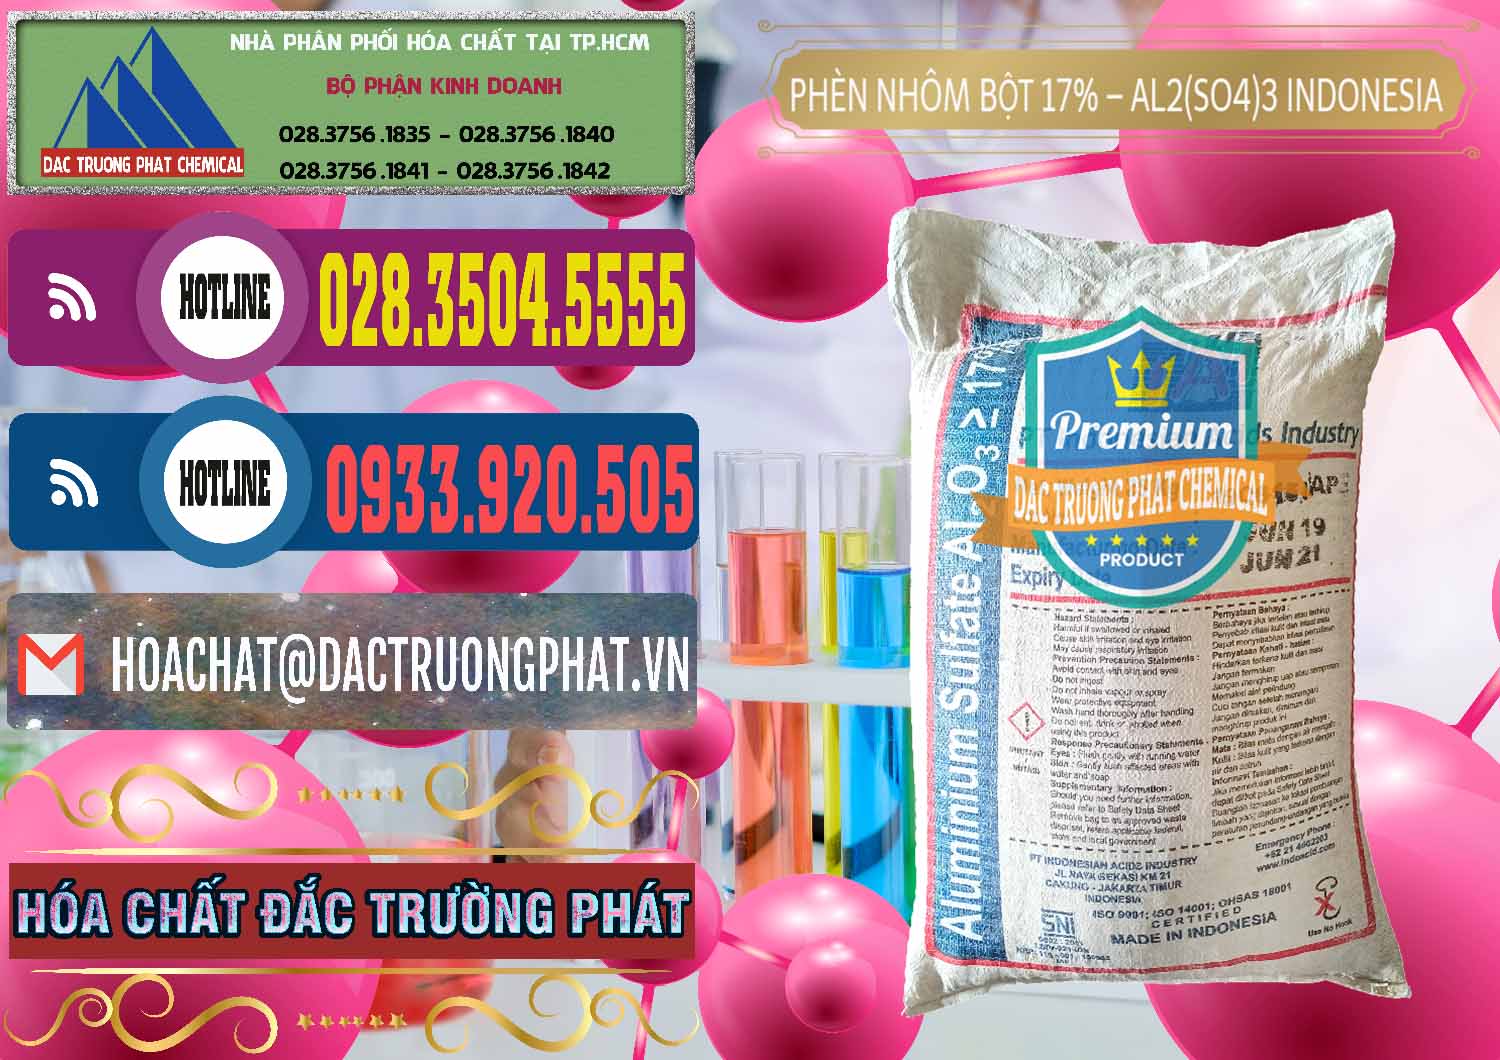 Cty chuyên cung cấp _ bán Phèn Nhôm Bột - Al2(SO4)3 17% bao 25kg Indonesia - 0114 - Công ty chuyên phân phối ( nhập khẩu ) hóa chất tại TP.HCM - muabanhoachat.com.vn